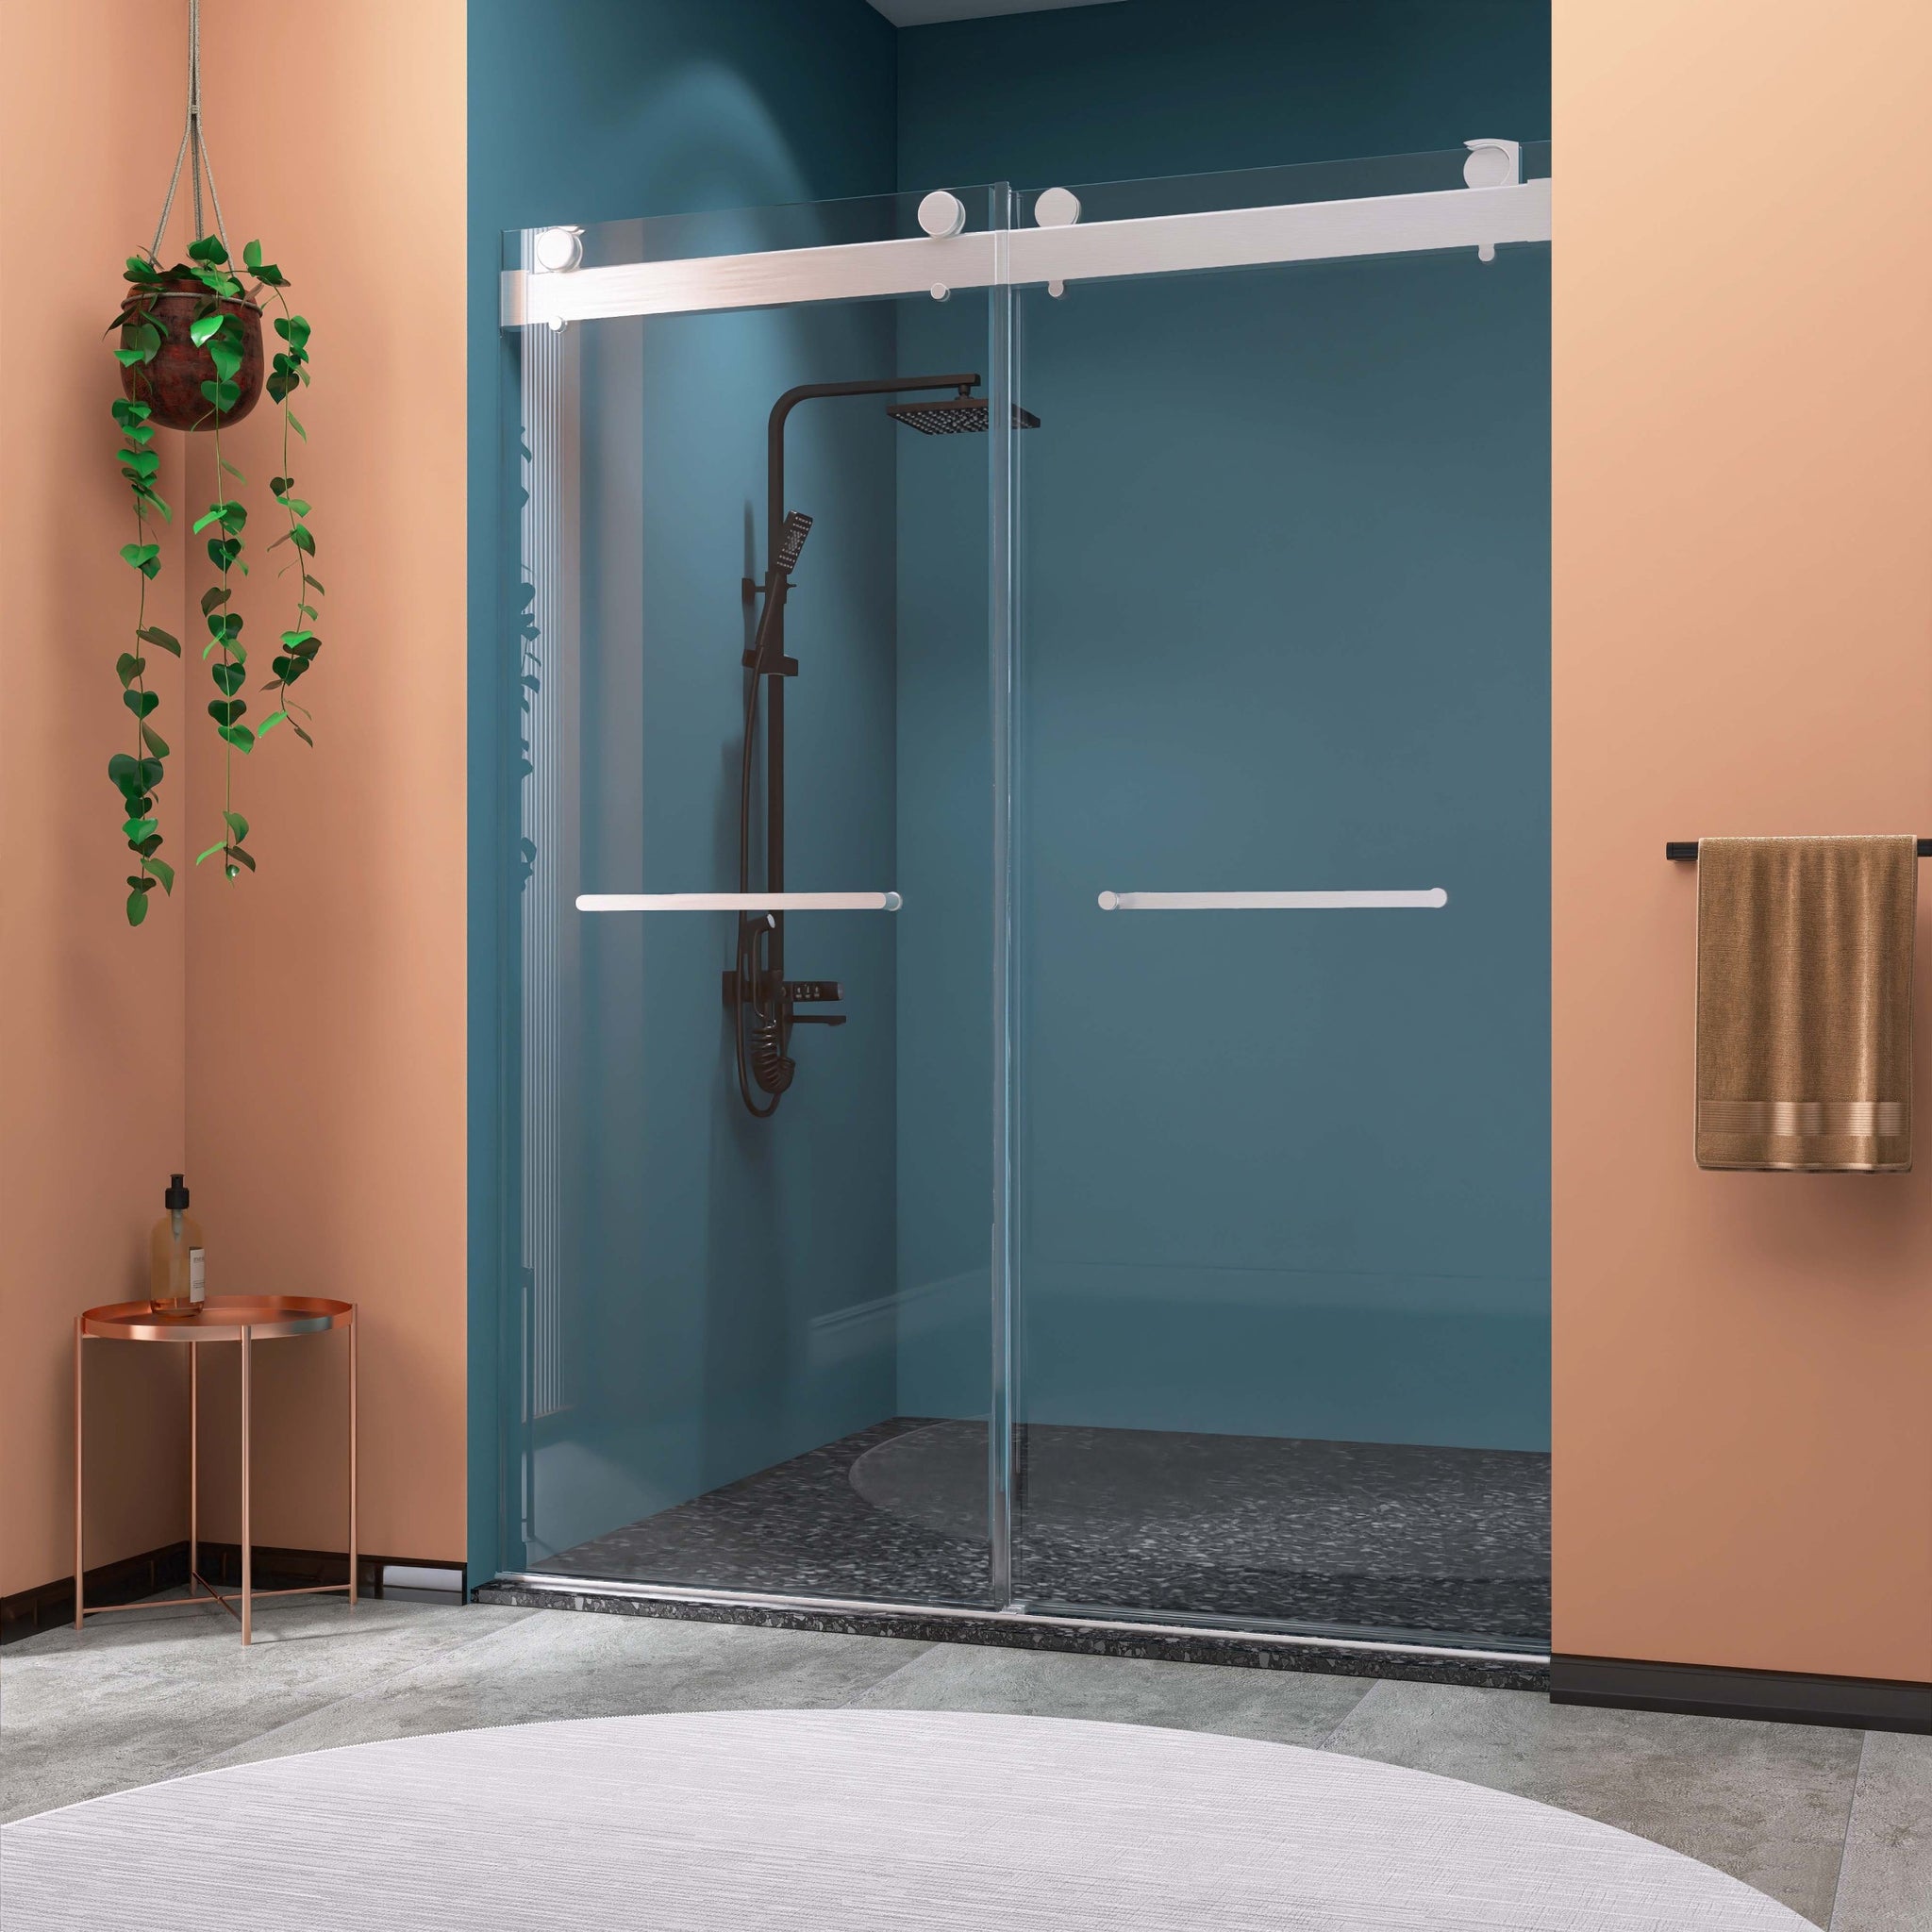 Frameless Double Sliding Shower, 69" 72" Width, 79" brushed nickel-bathroom-modern-glass